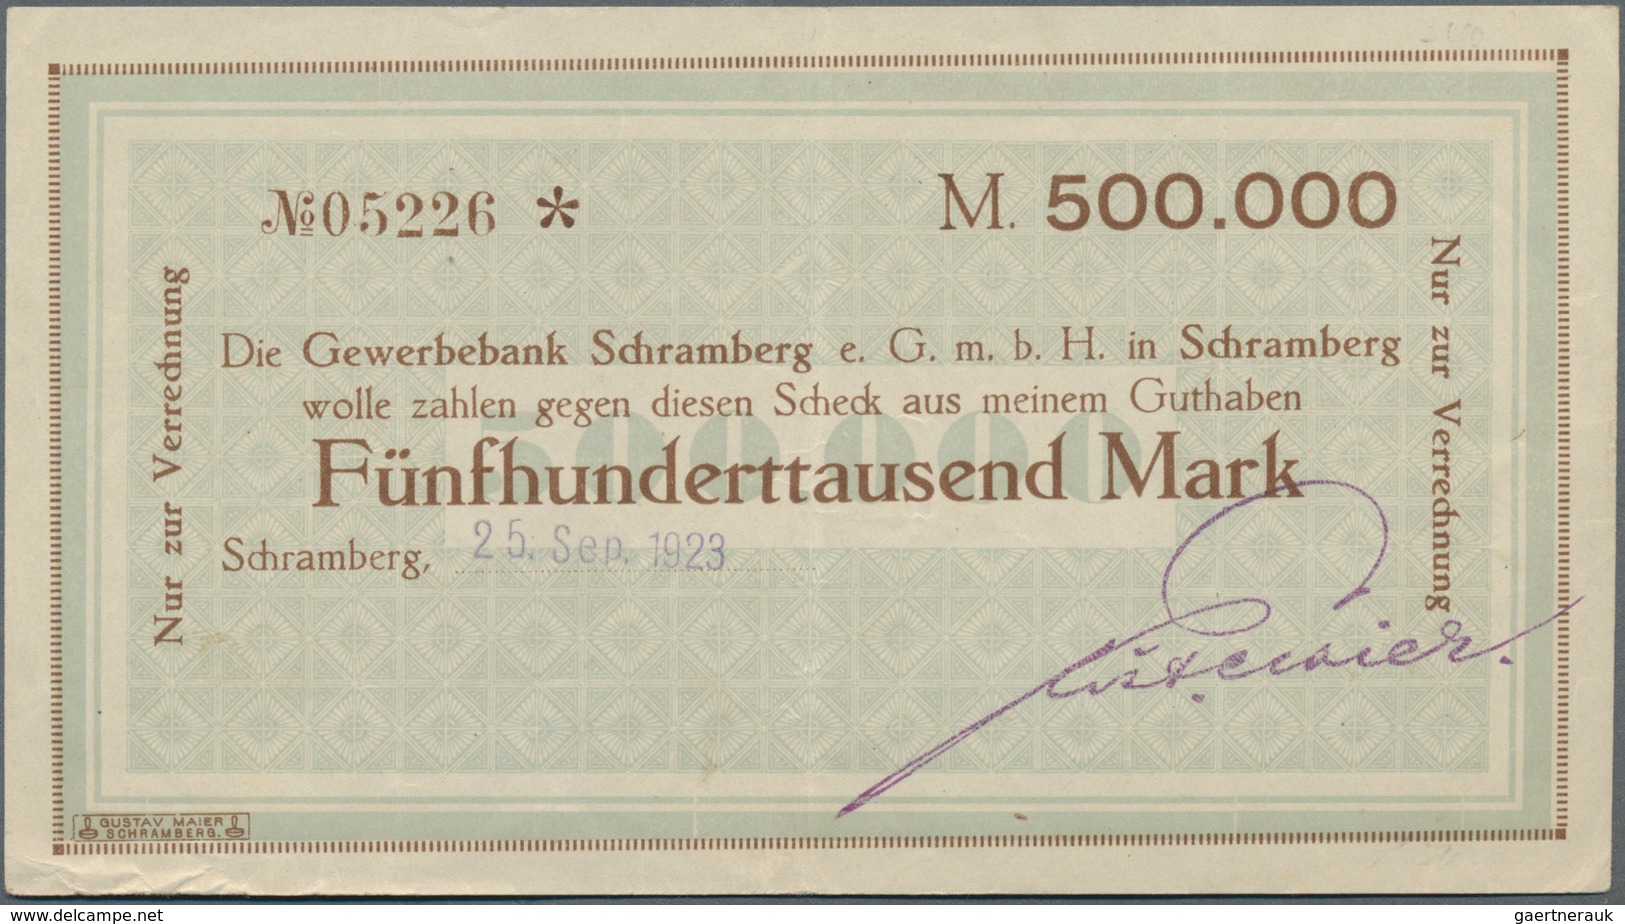 Deutschland - Notgeld - Württemberg: Schramberg, Gustav Meier, Buchdruckerei, 300 Tsd. Mark, 12.10.1 - [11] Local Banknote Issues